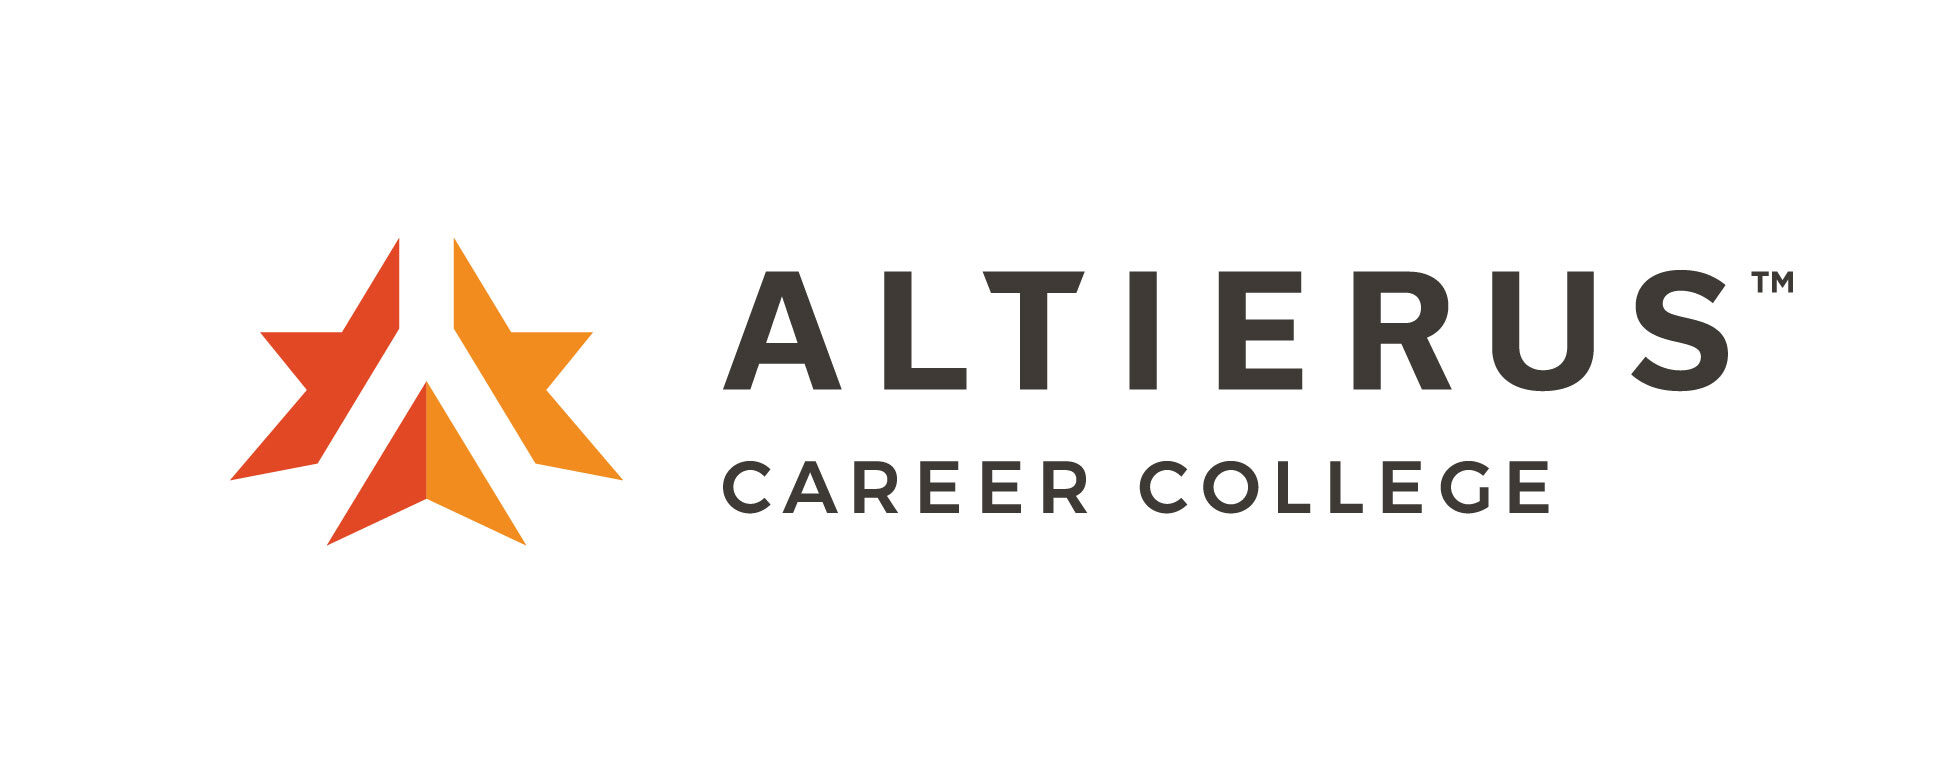 altierus career college loan forgiveness